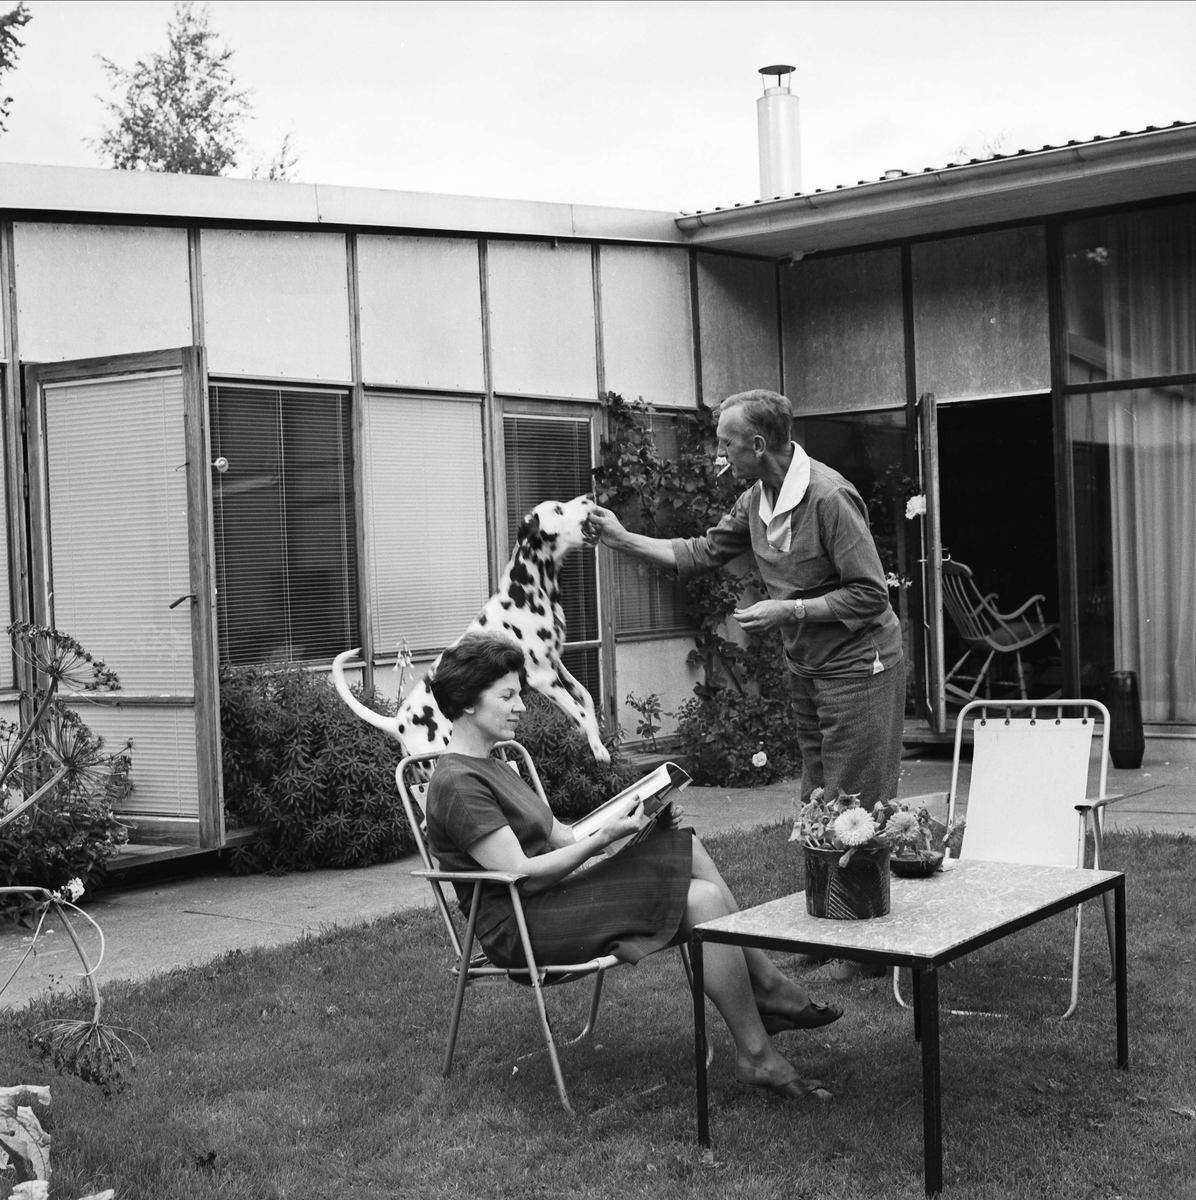 Keramikern Ingrid Atterberg med make i parets trädgård, Kåbo, Uppsala september 1962